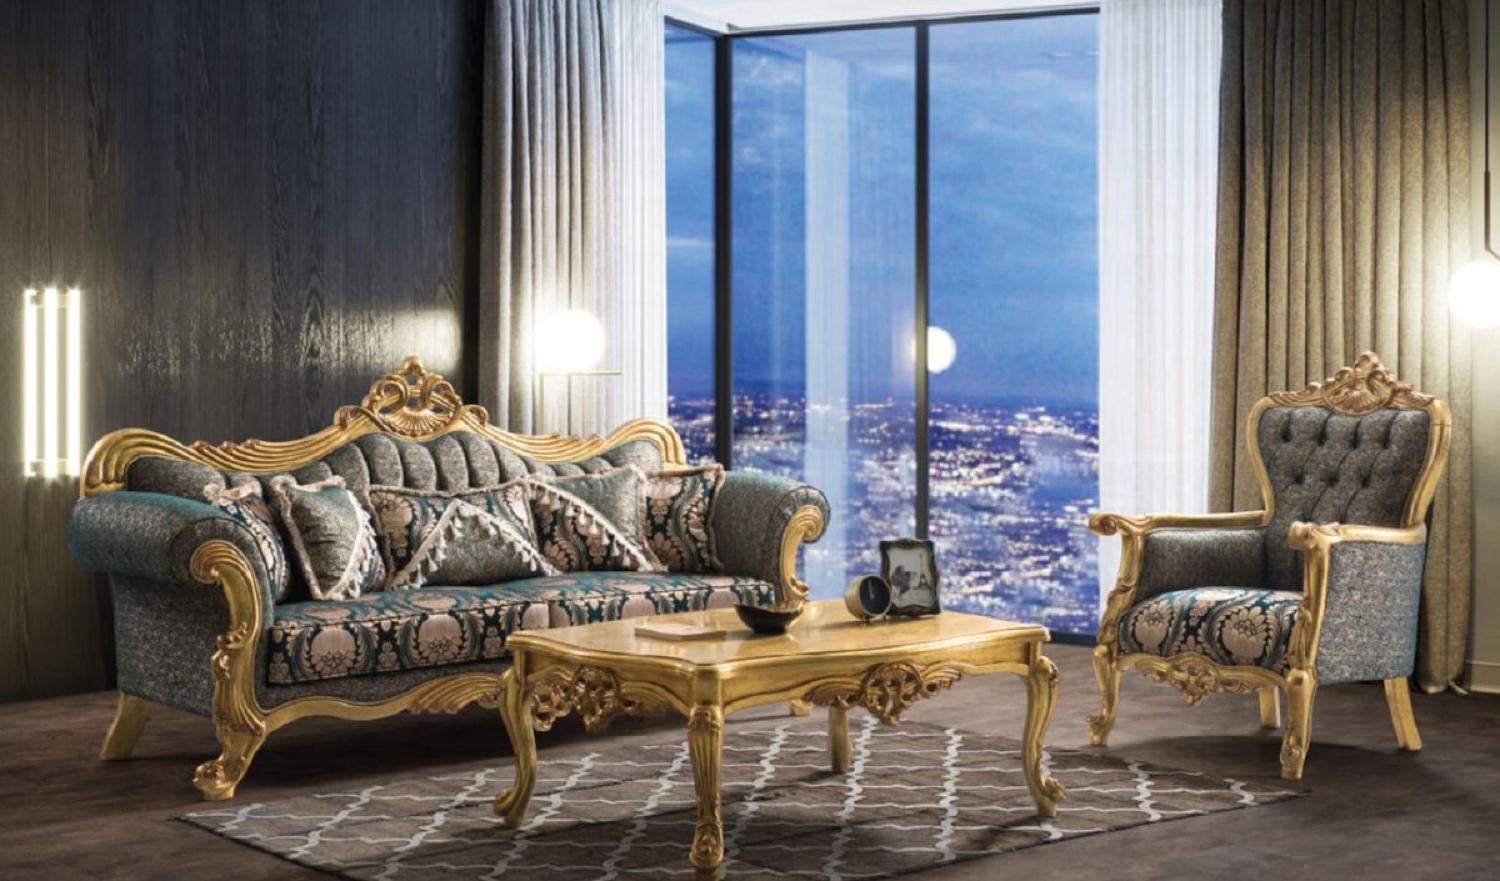 Casa Padrino Luxus Barock Wohnzimmer Set Grün / Gold - 2 Sofas & 2 Sessel & 1 Couchtisch - Handgefertigte Wohnzimmer Möbel im Barockstil - Edel & Prunkvoll Bild 1